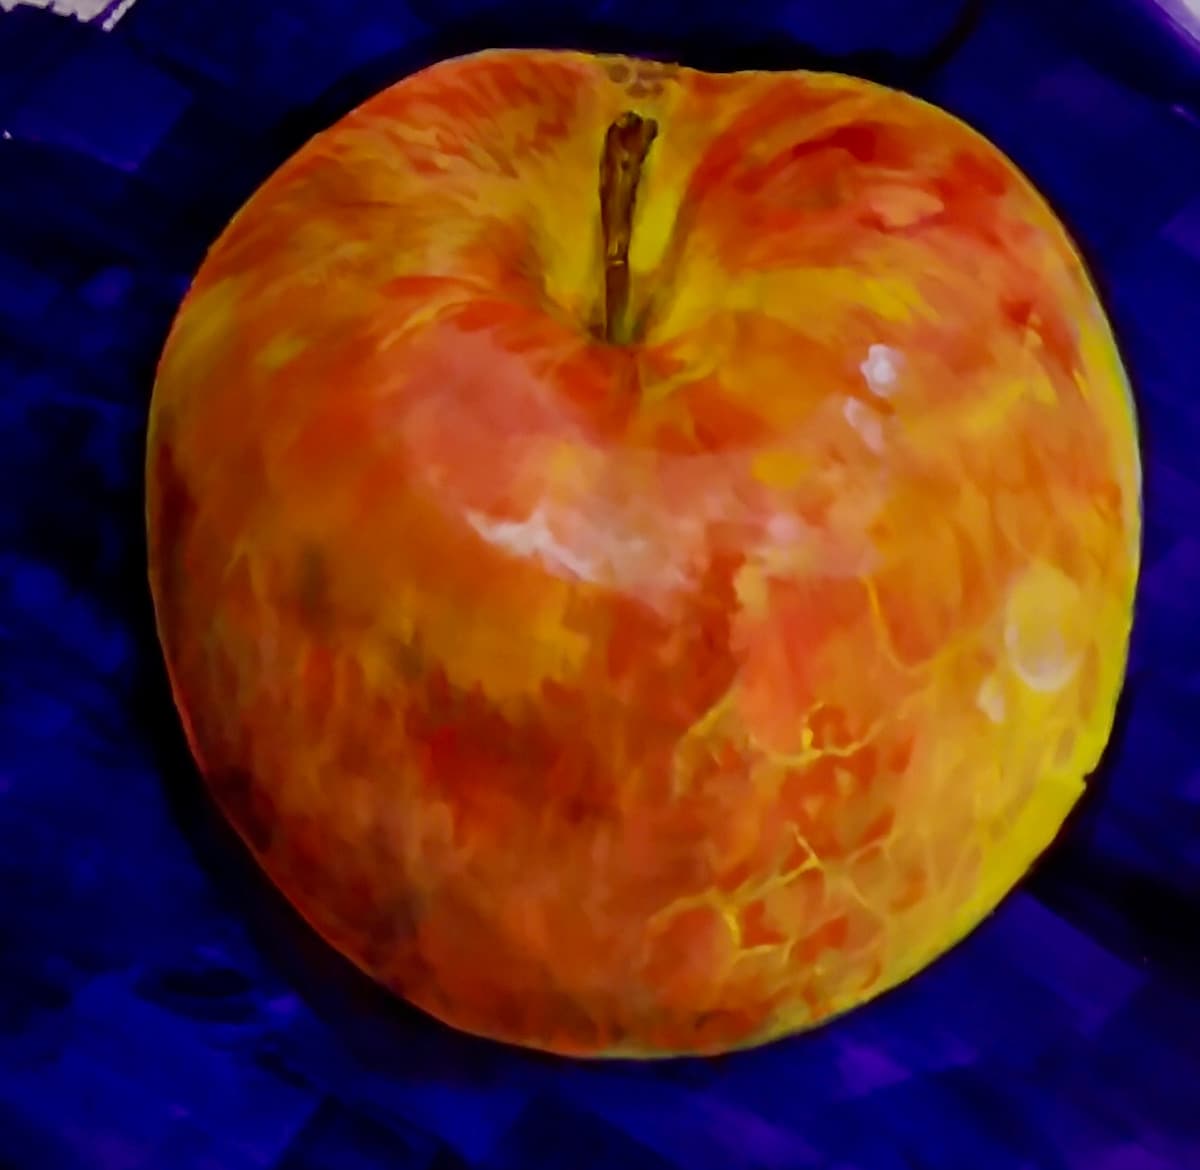 アクリル絵の具によるりんごの絵